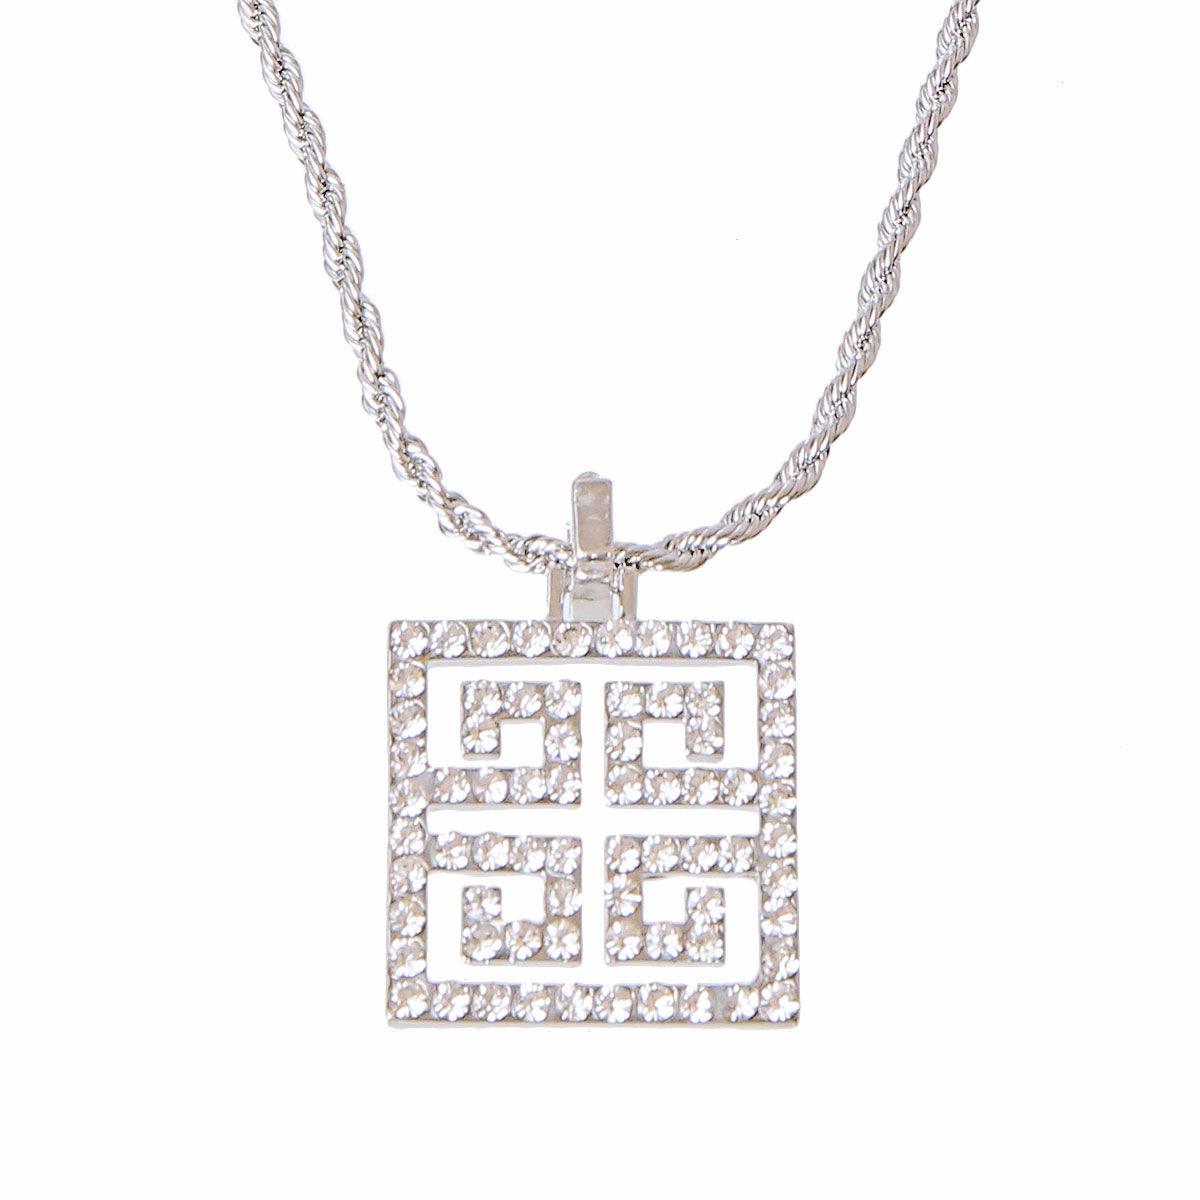 Shine Bright: Silver Rhinestone Pendant Chain Necklace